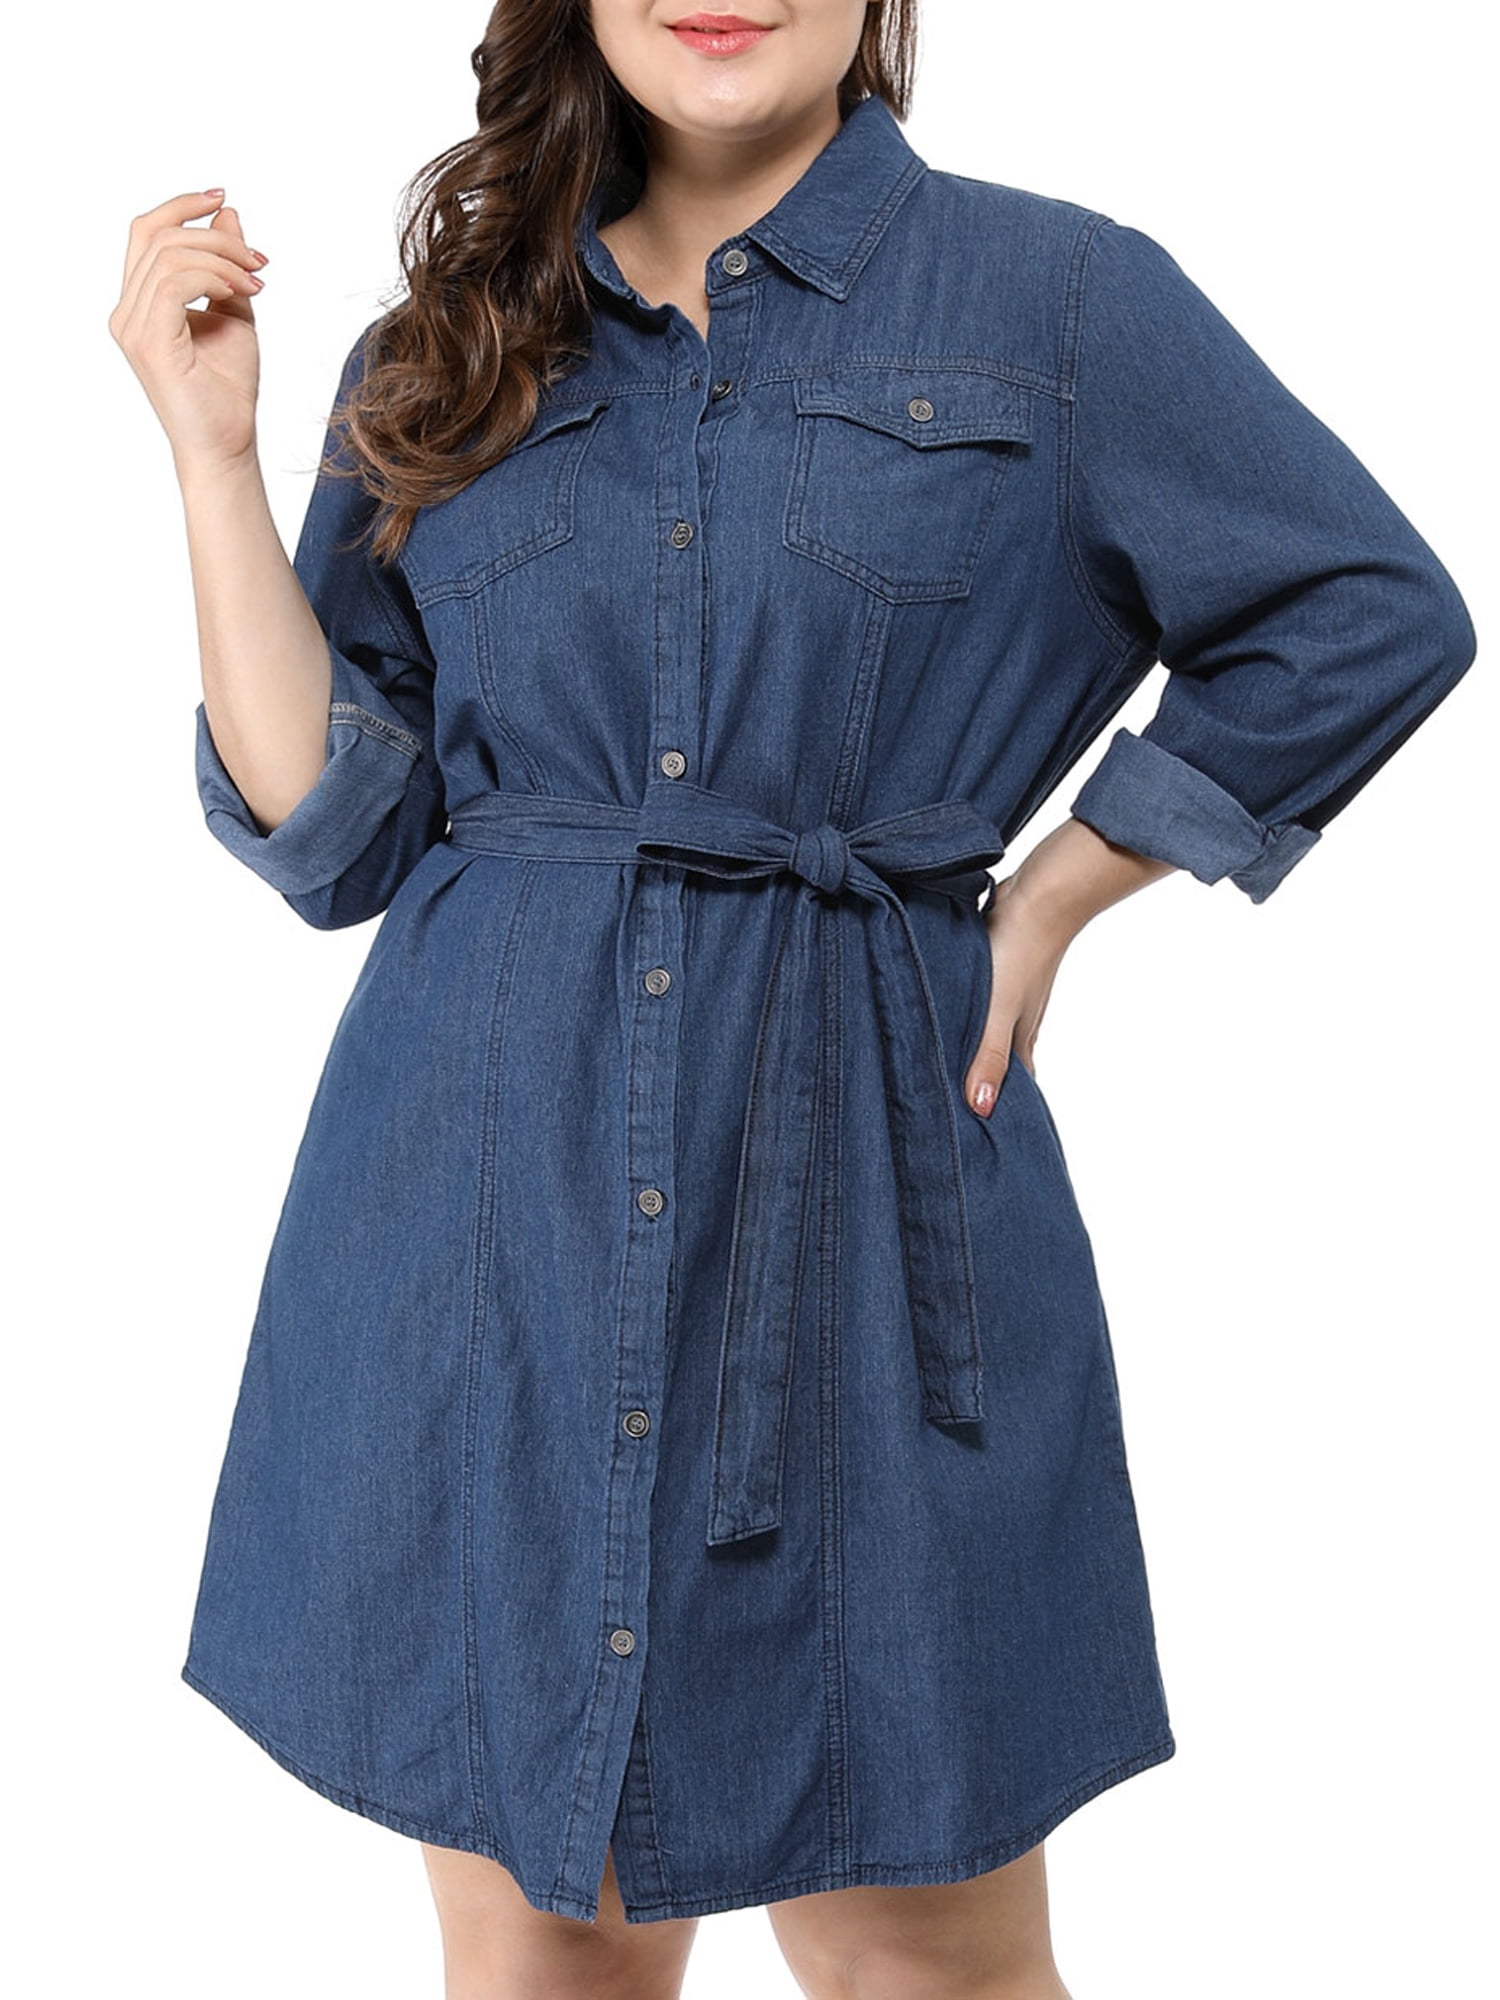 Unique Bargains Women's Plus Size Long Sleeve Above Knee Denim Shirt Dress Walmart.com